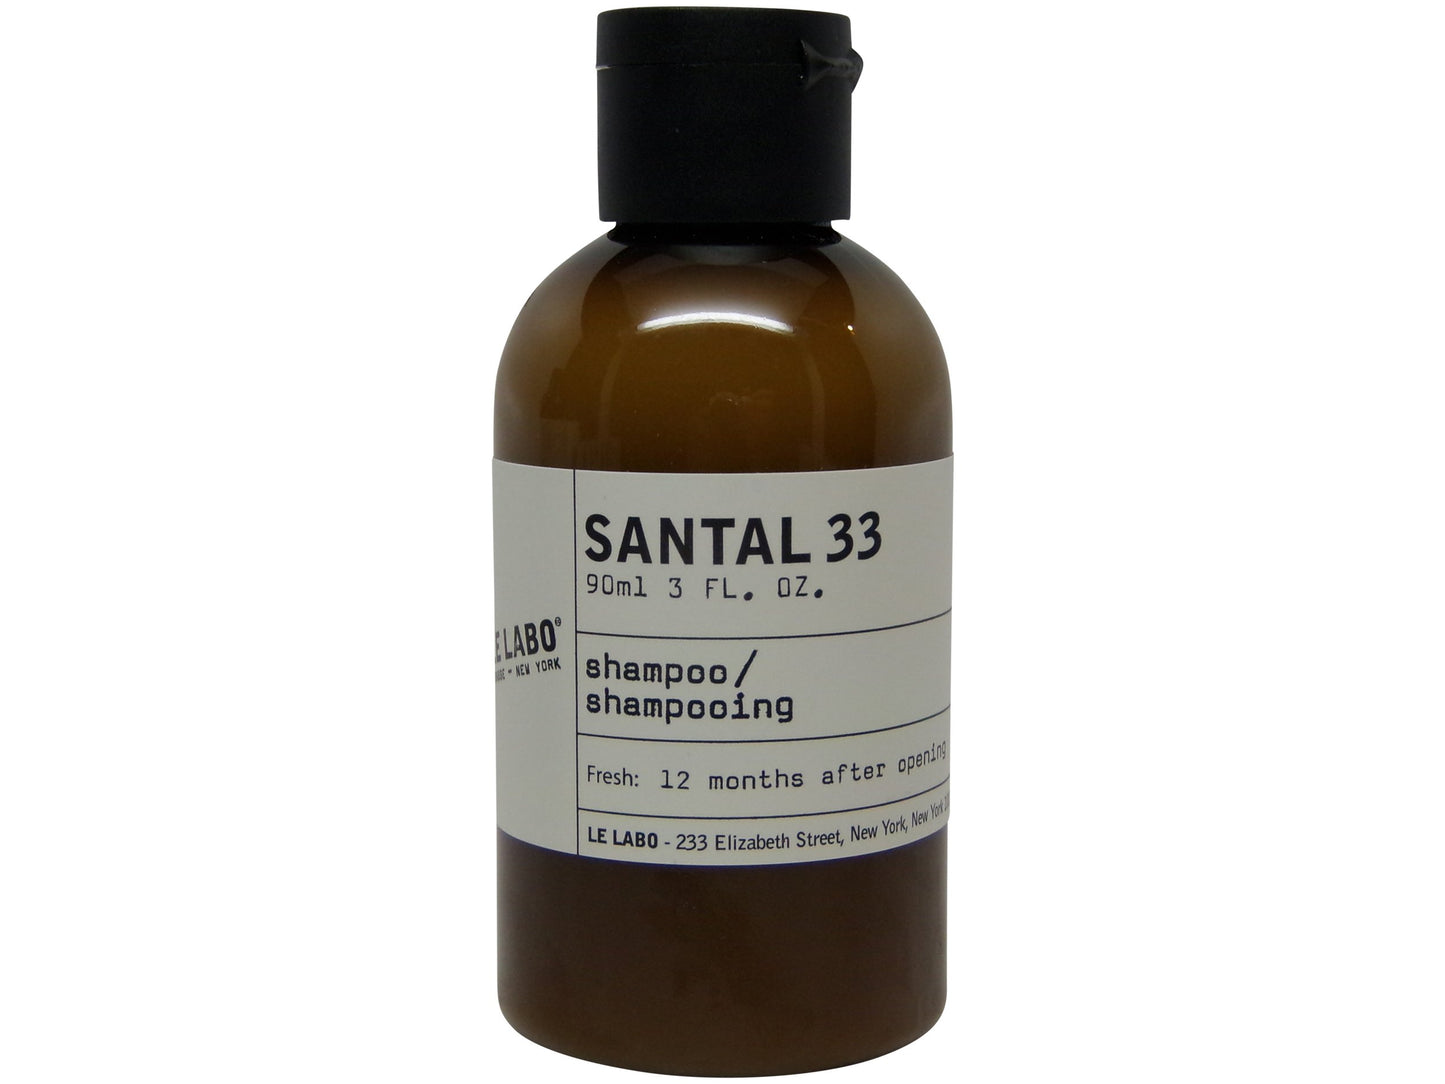 Le Labo Santal 33 Shampoo 3oz bottle